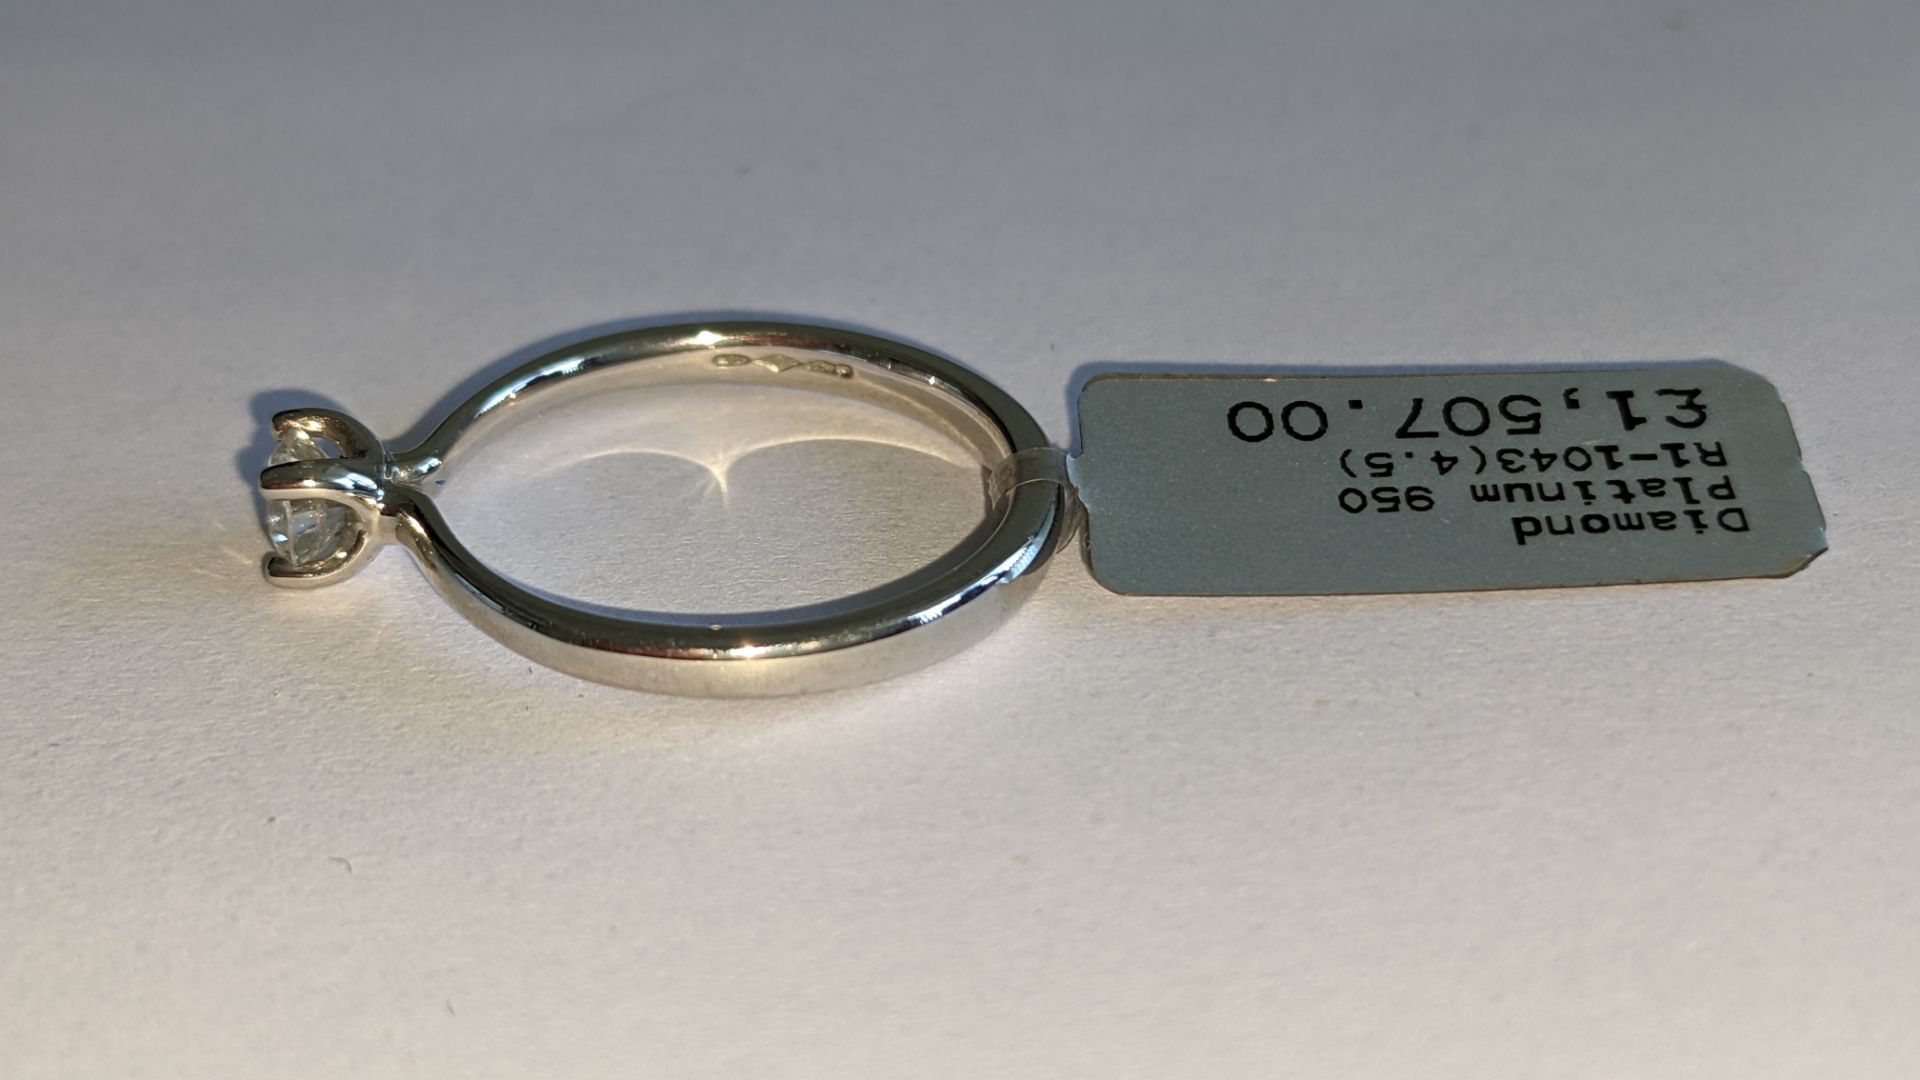 Single stone diamond & platinum 950 ring with 0.35ct H/Si diamond, RRP £1,507 - Image 17 of 29